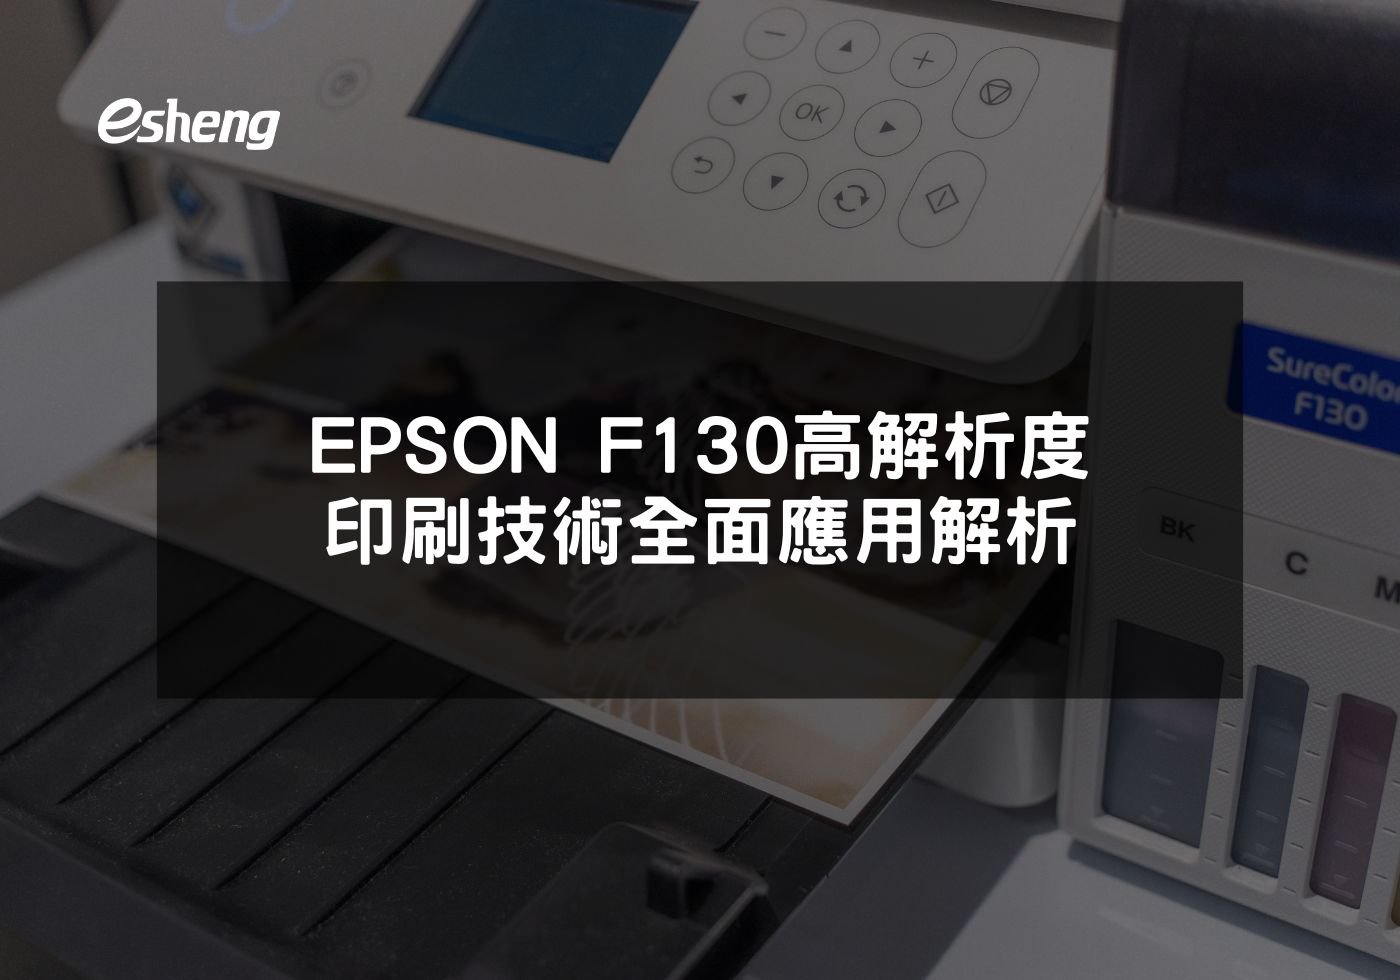 閱讀更多文章 EPSON F130高解析度印刷技術全面應用解析